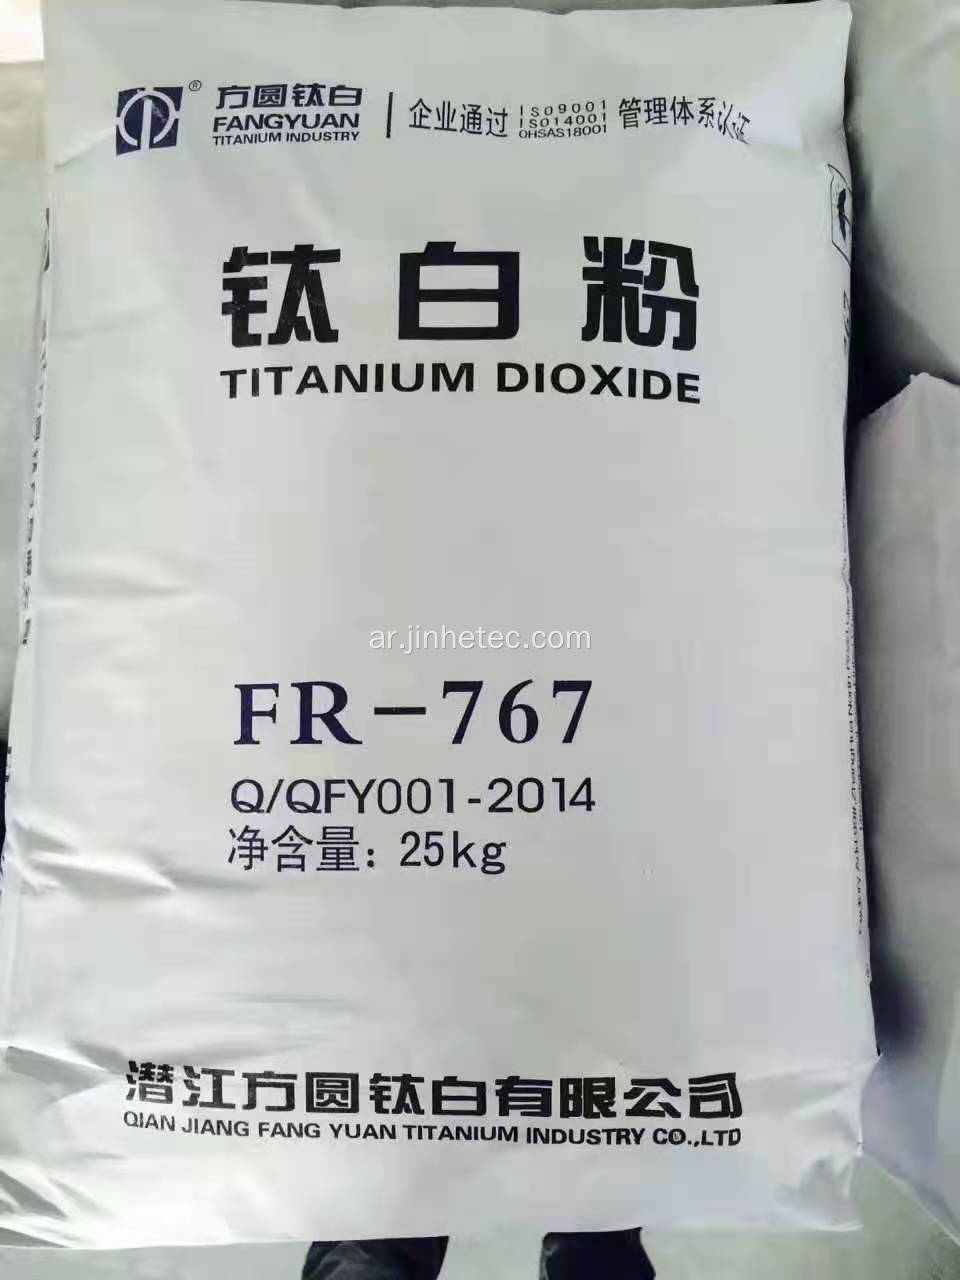 لومون التيتانيوم ثاني أكسيد روتيلي TIO2